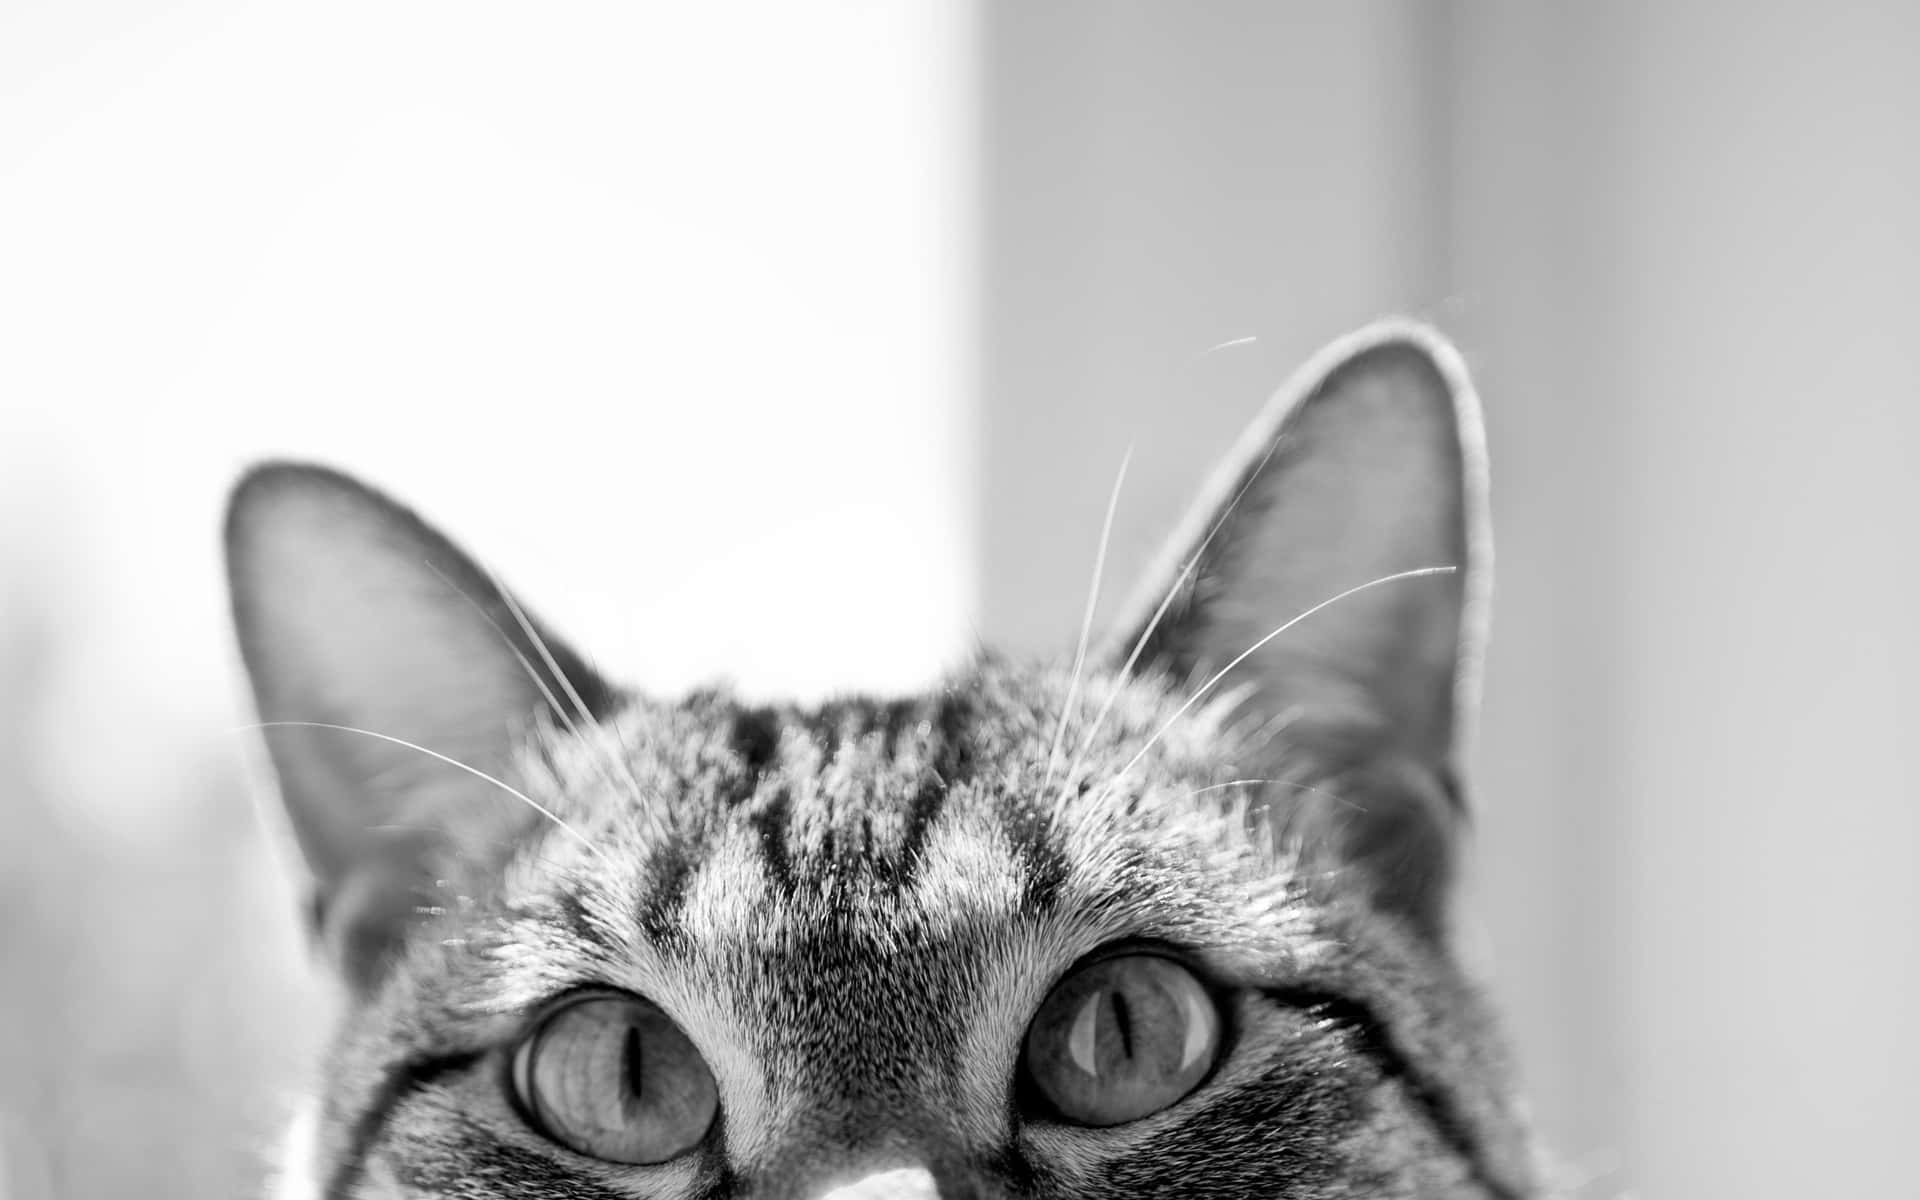 "Eye spy with my little eye - A beautiful Cat's Eye"